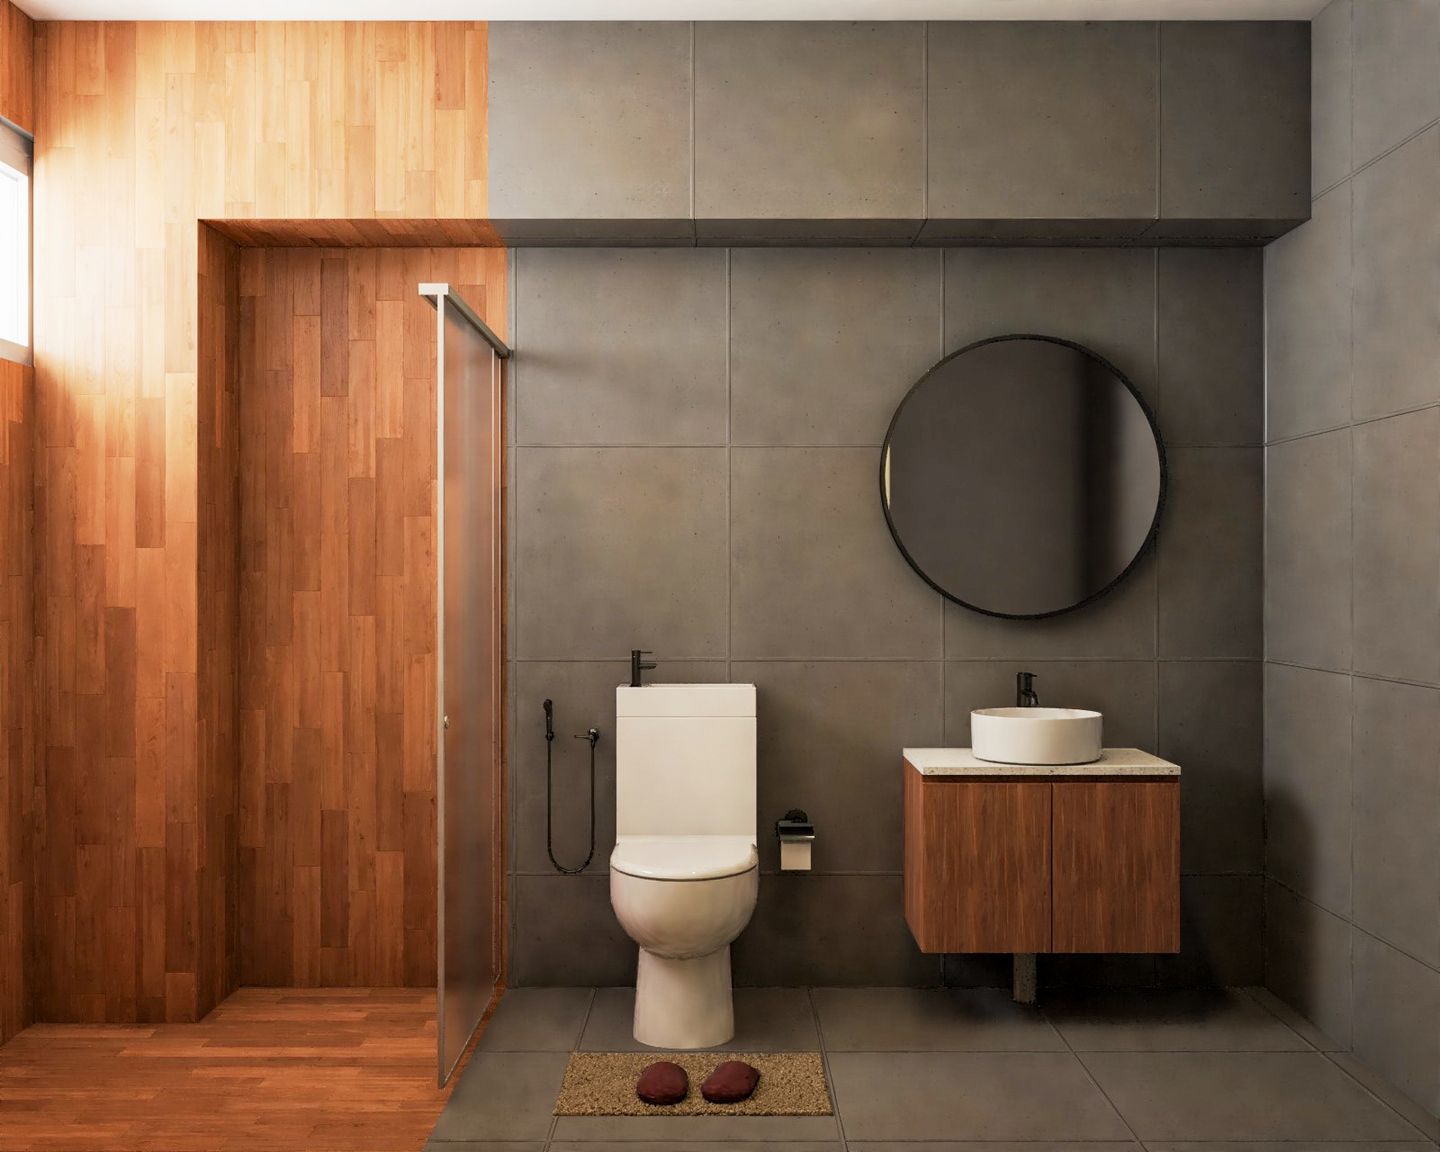 Wooden Bathroom Design With Maximum Storage - Livspace